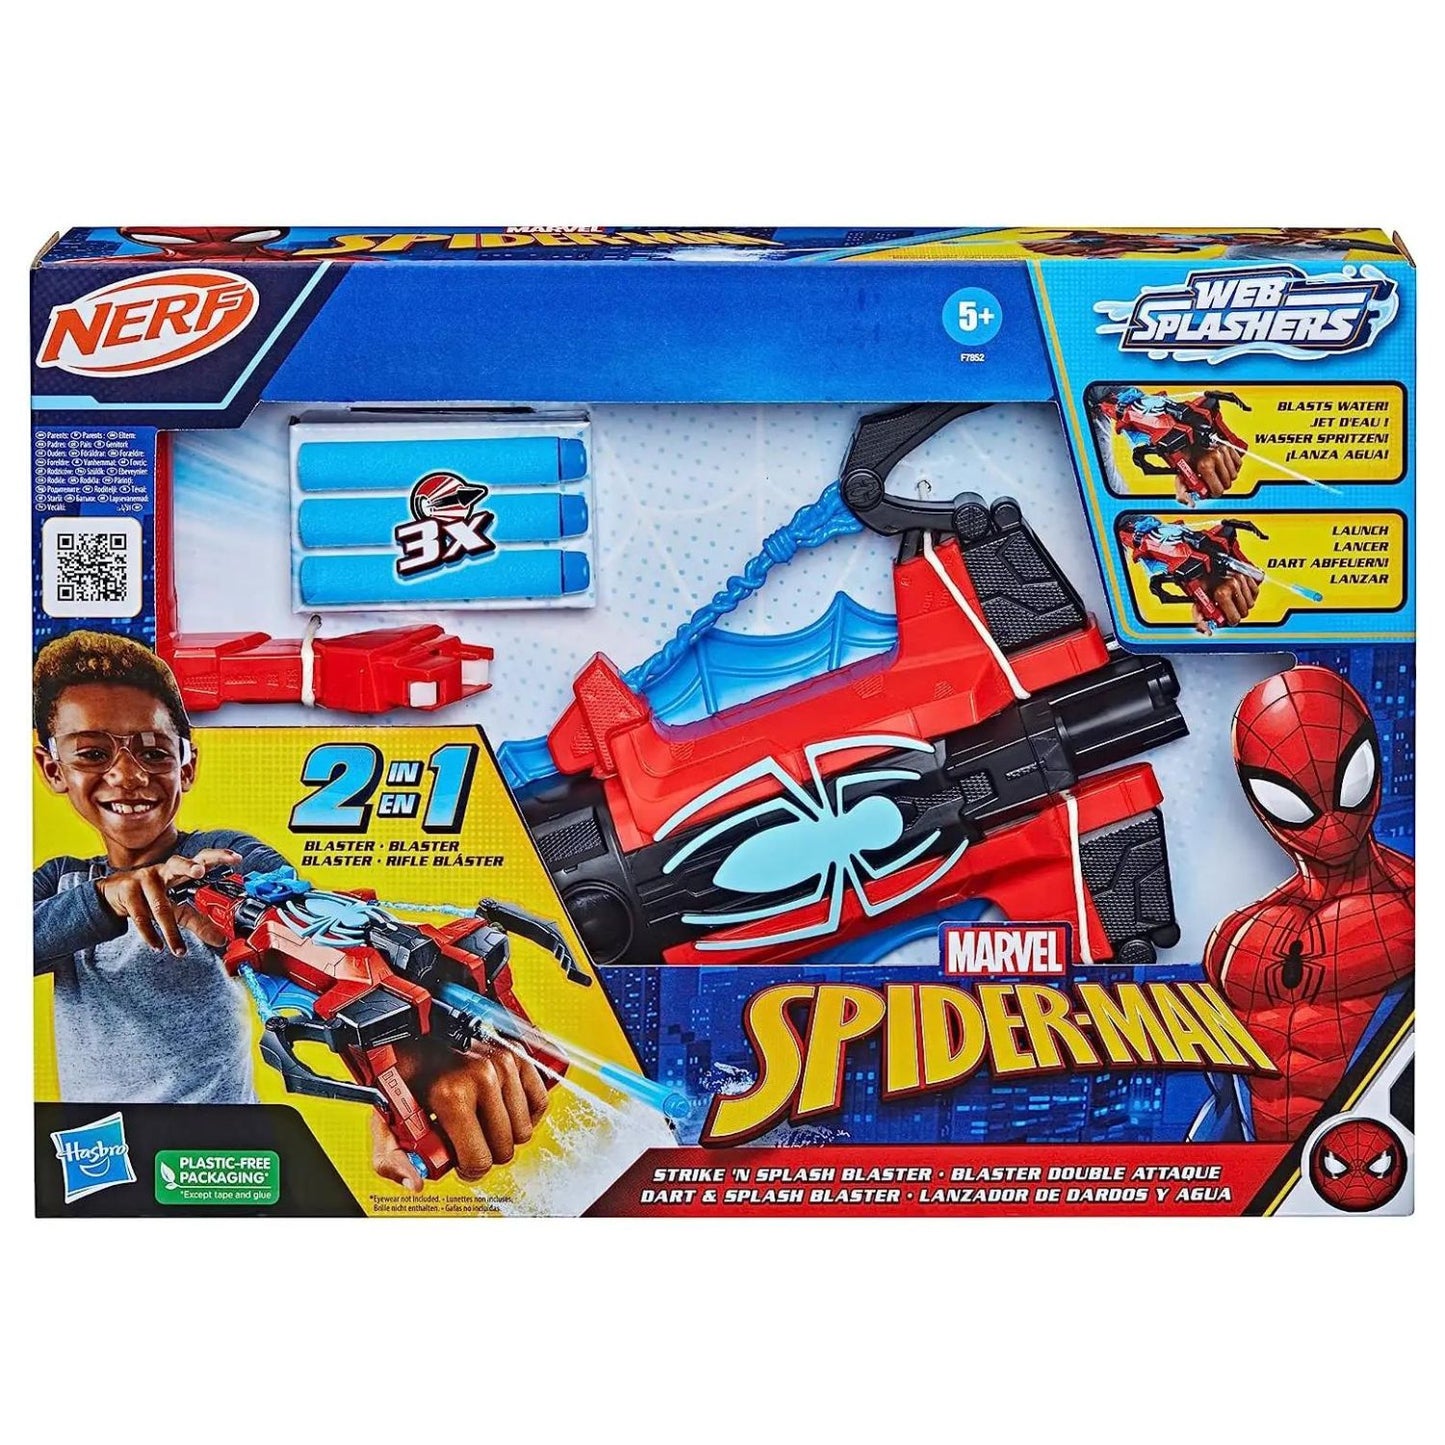 Set e kit completi di spider-man per le feste